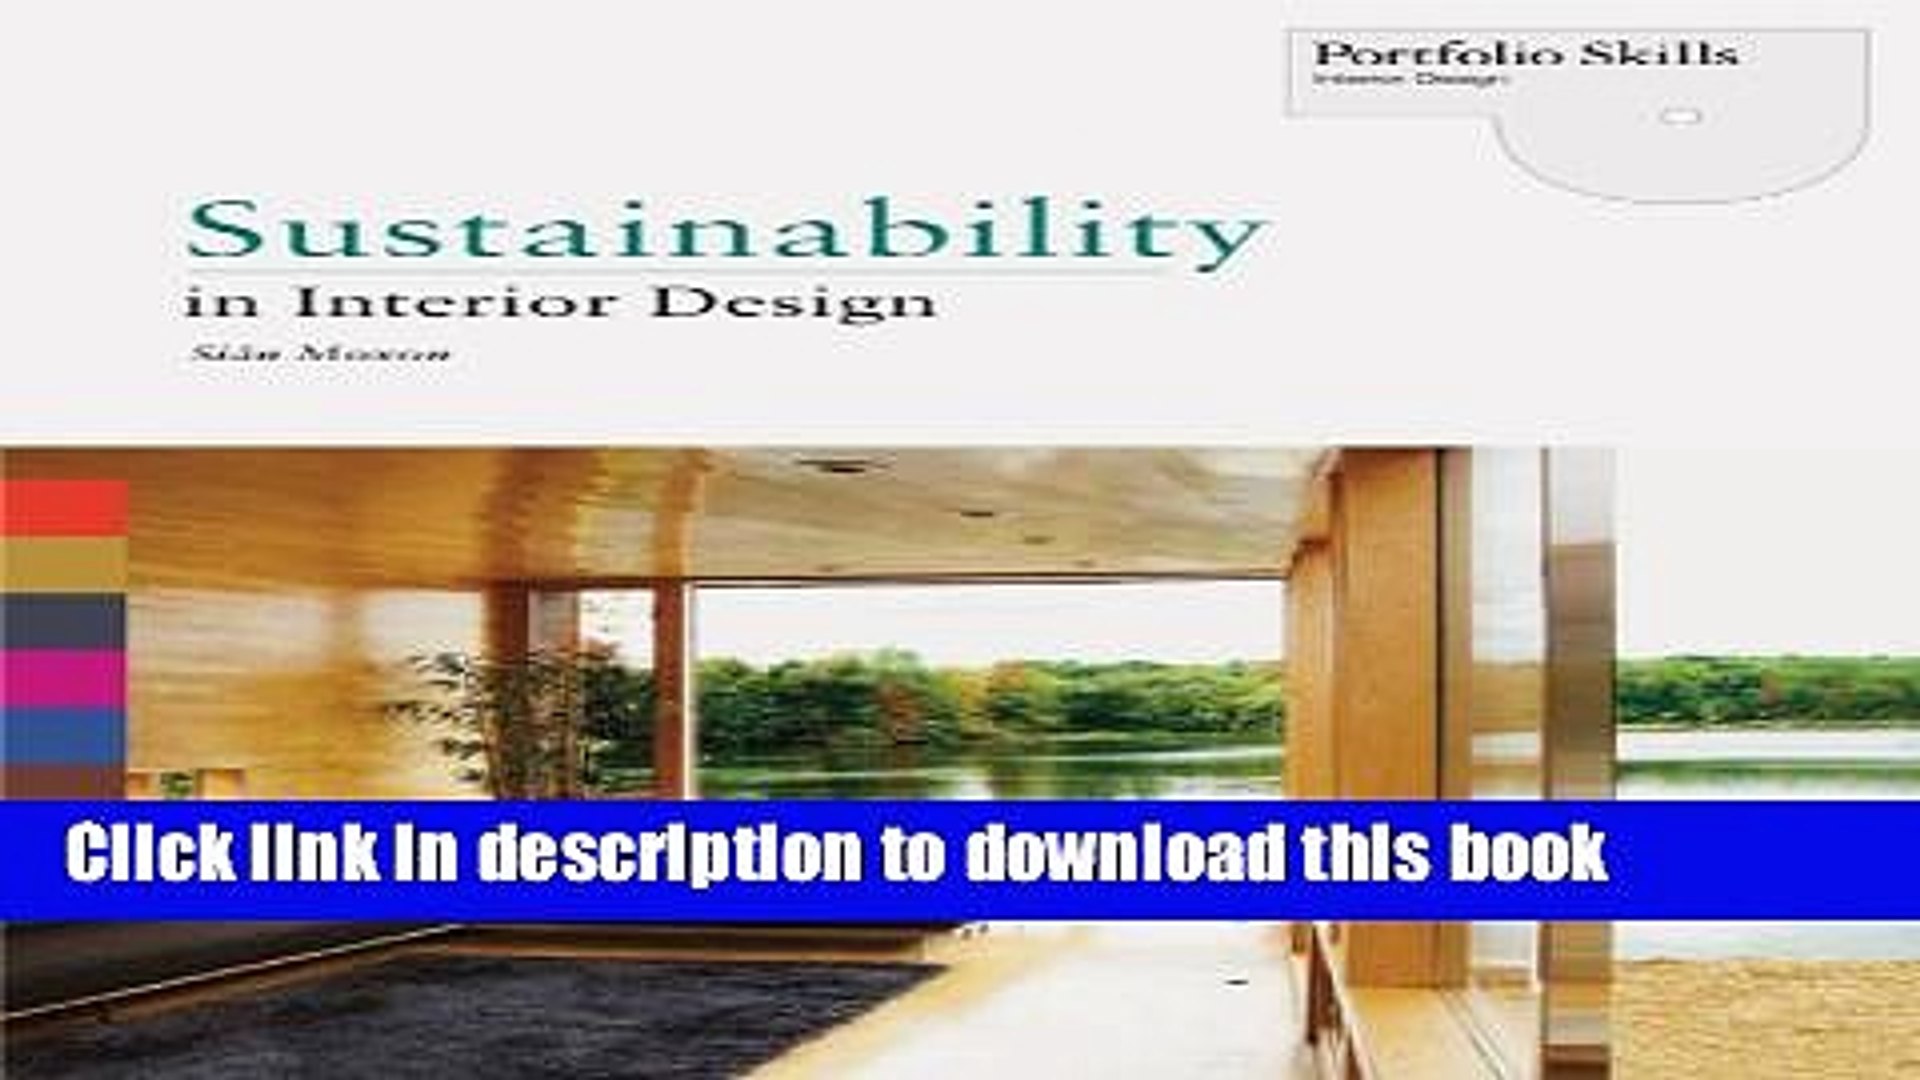 Pdf Sustainability In Interior Design Portfolio Skills Interior Design Full Ebook